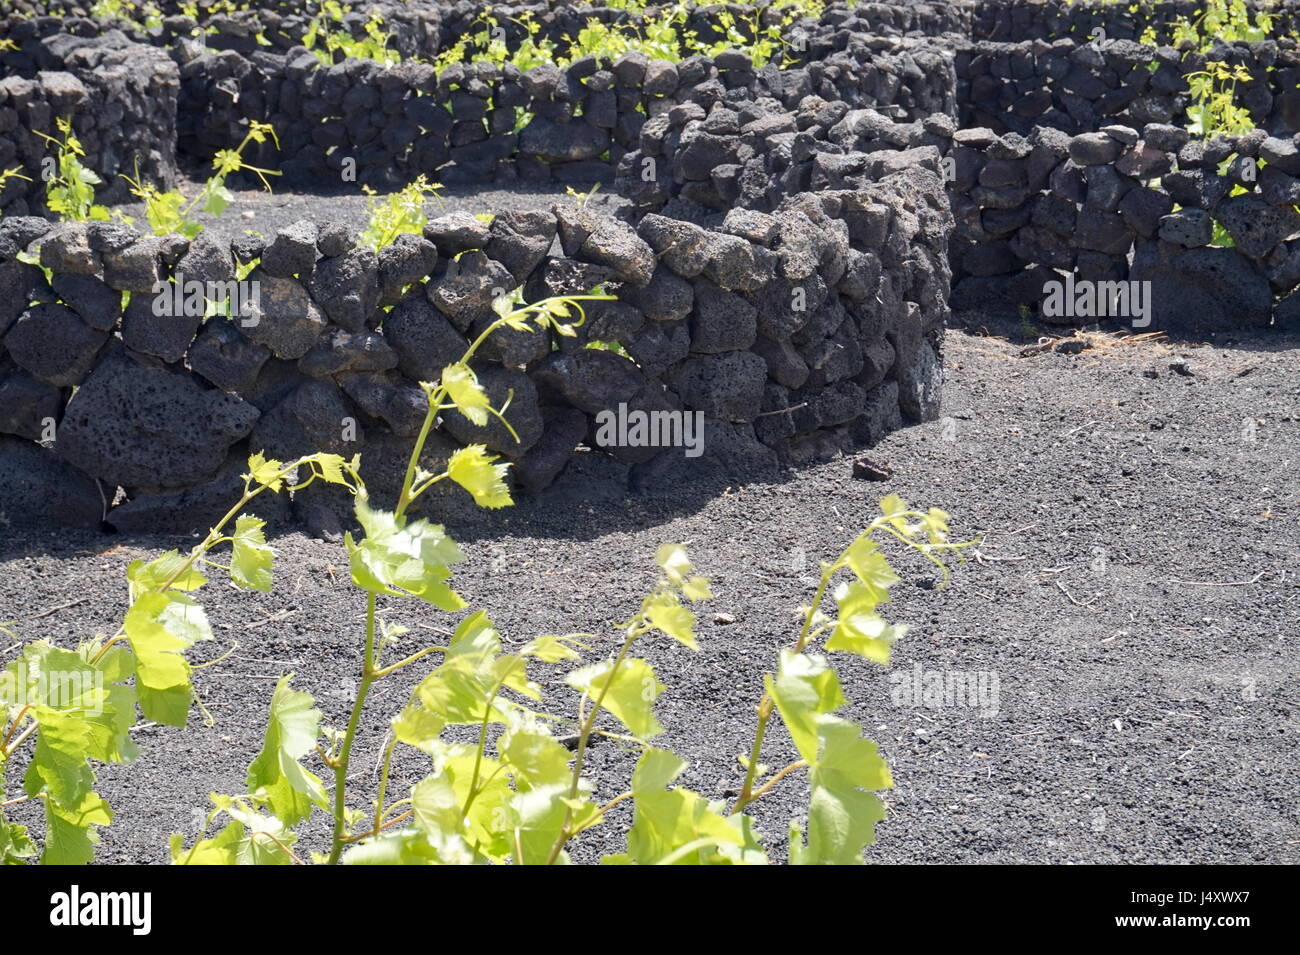 Ein Weinberg, Lanzarote, Kanarische Inseln, Spanien. Die Reben werden in kleinen Gruben mit Wänden aus vulkanischem Gestein sammeln Tau in der ariden Umgebung angebaut. Stockfoto